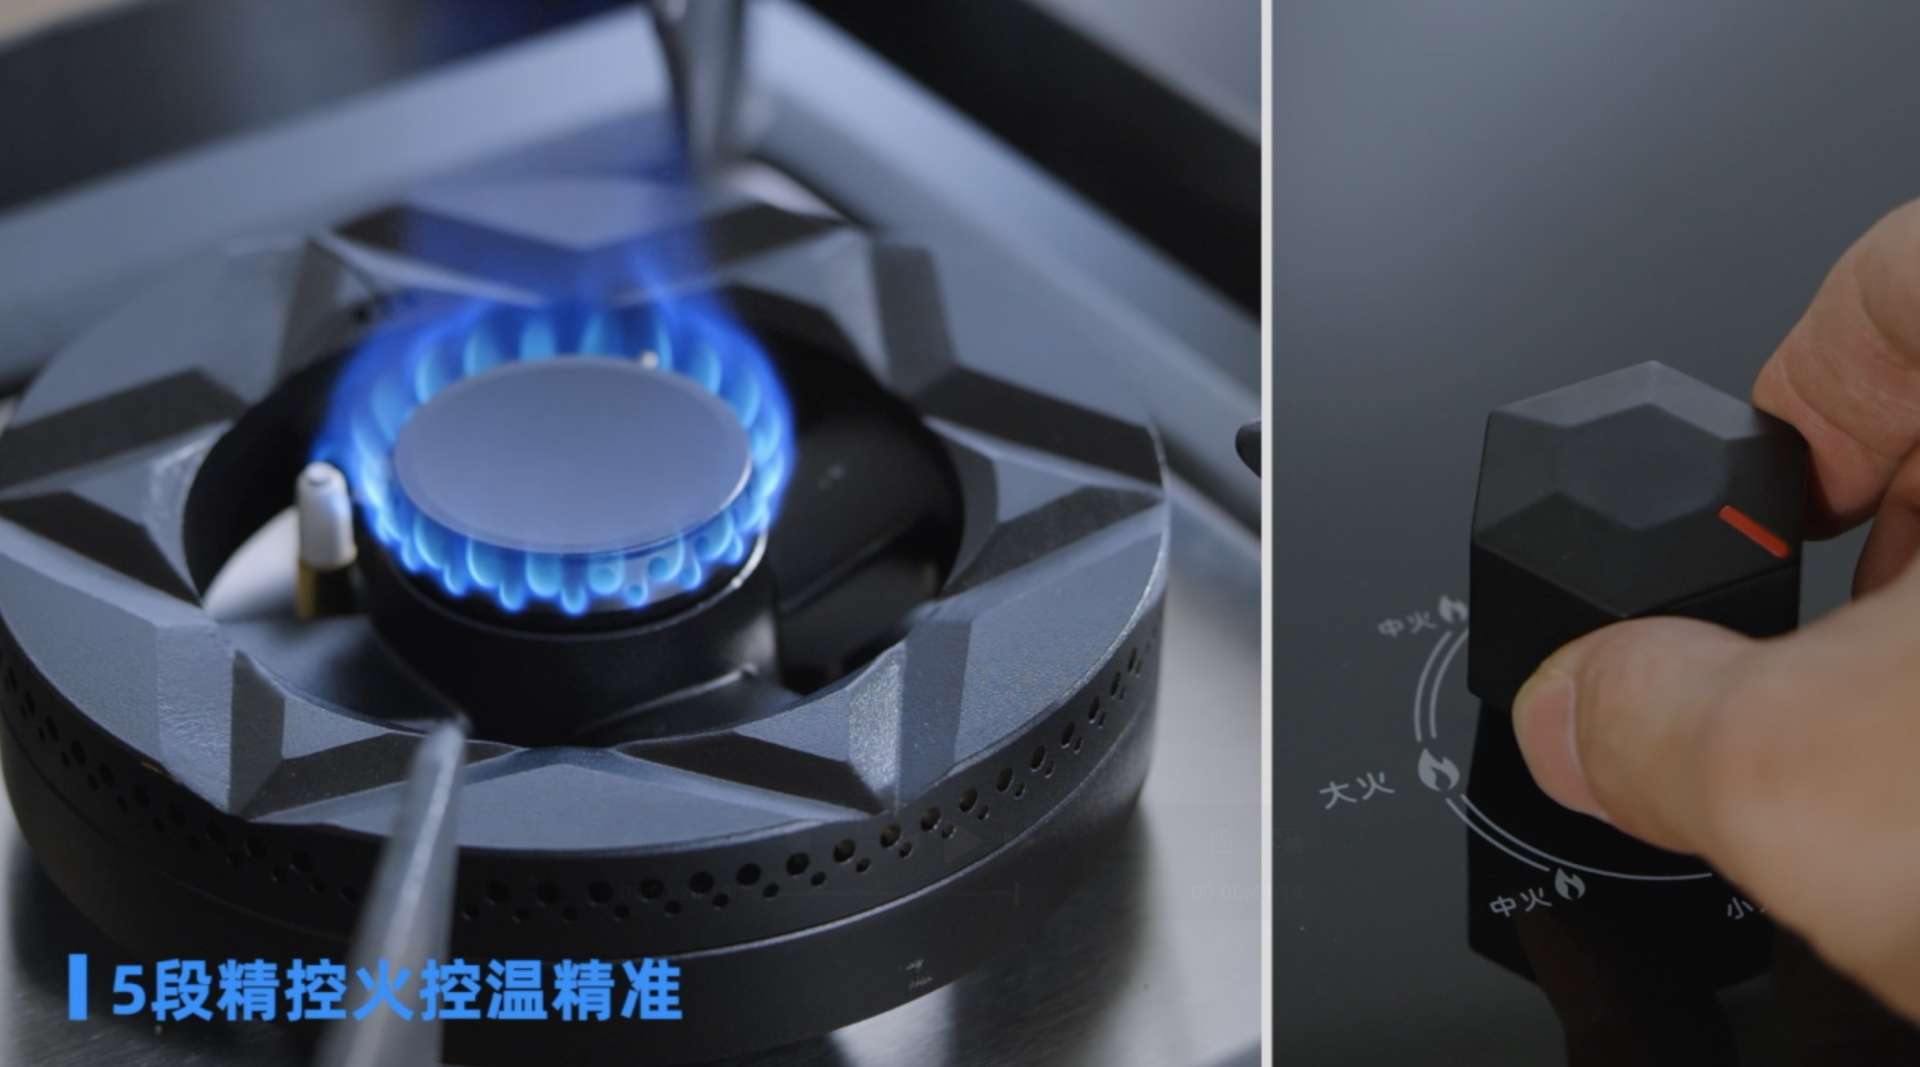 澳柯玛燃气灶五段火力精准控温，智能熄火保护，烹饪时刻贴心守候